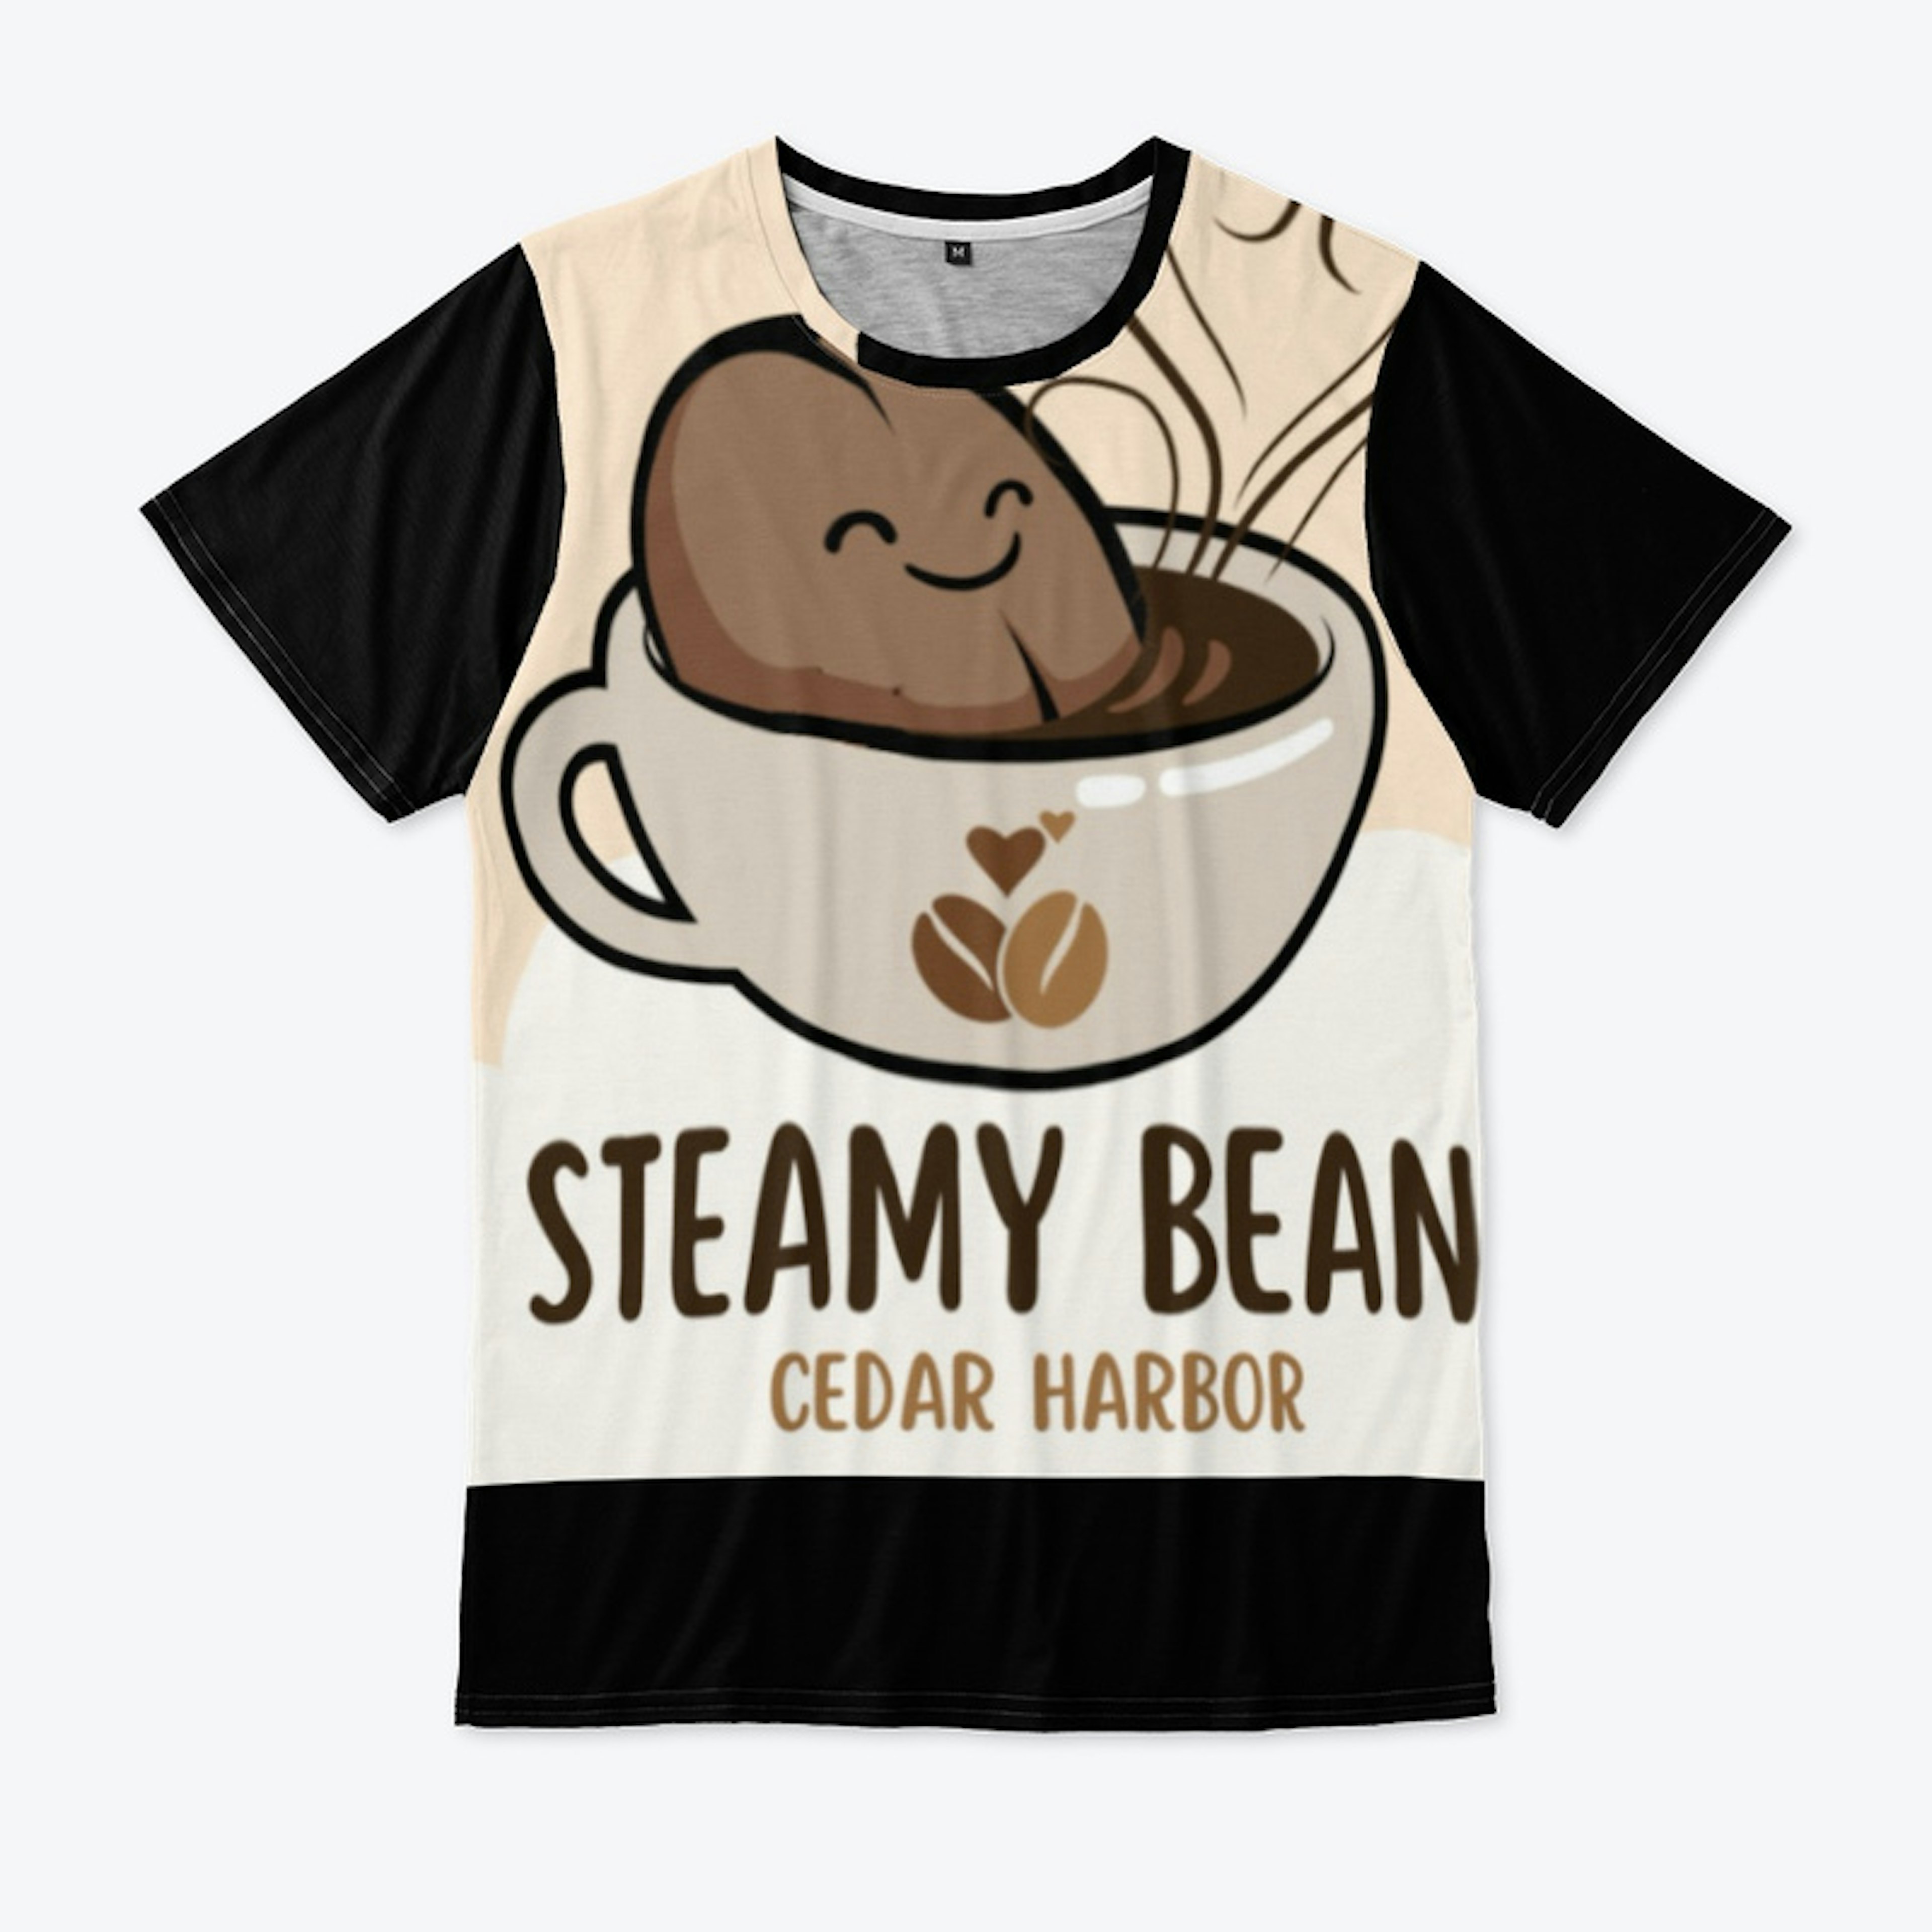 Steamy Beans Cafe of Cedar Harbor